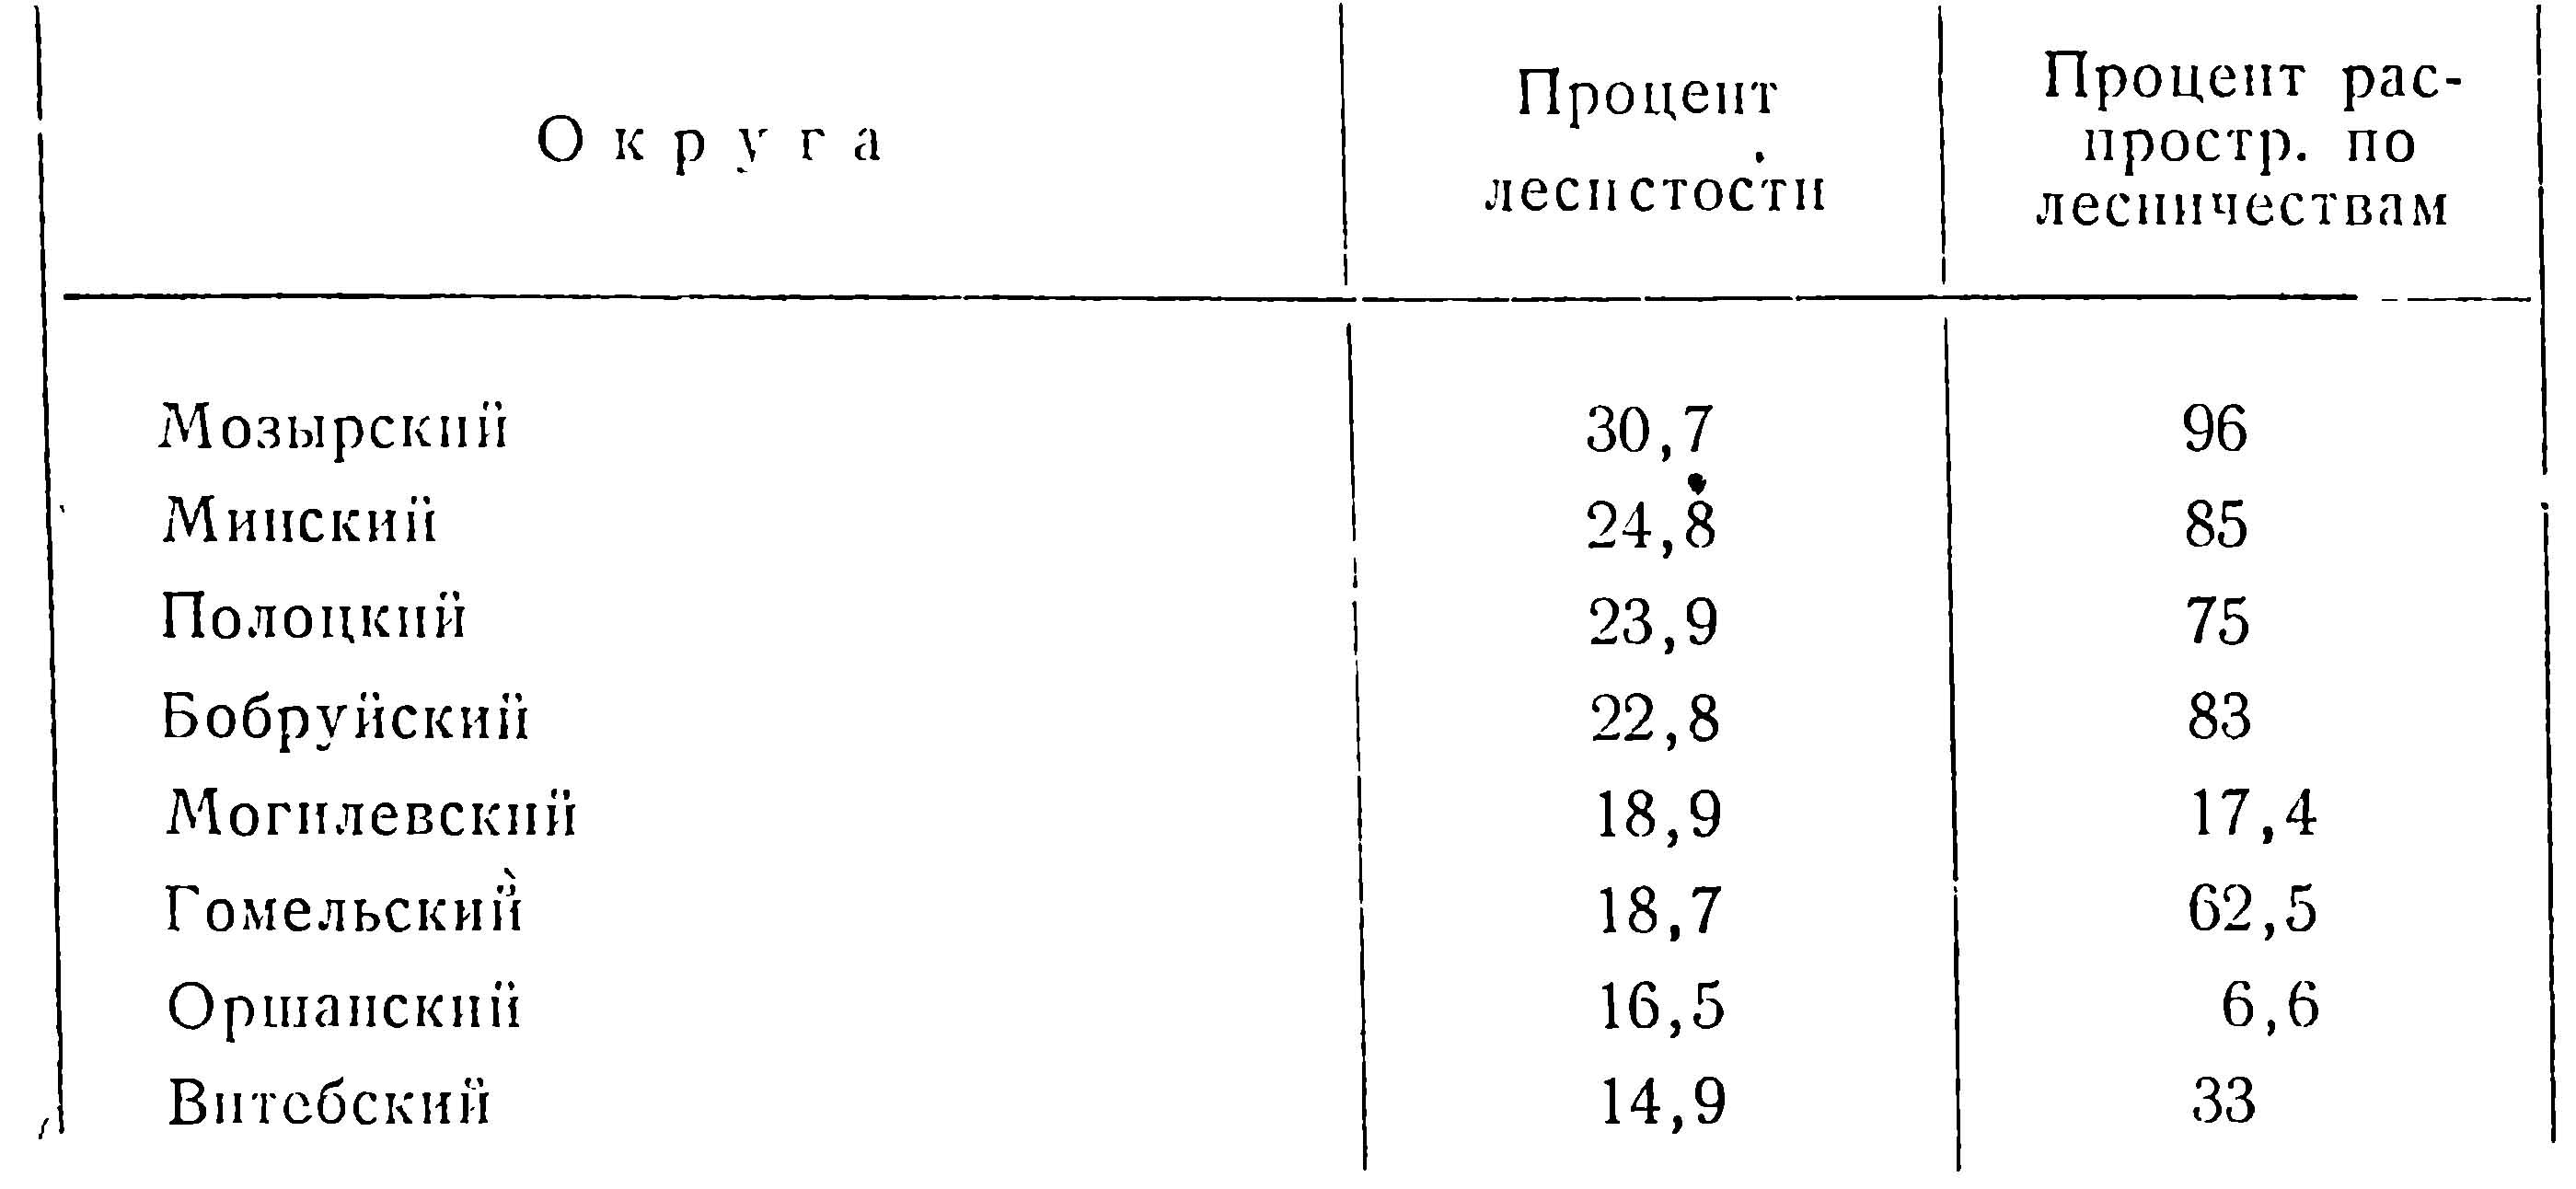 Таблица 2. Распространение косули по округам в 1929 г.
